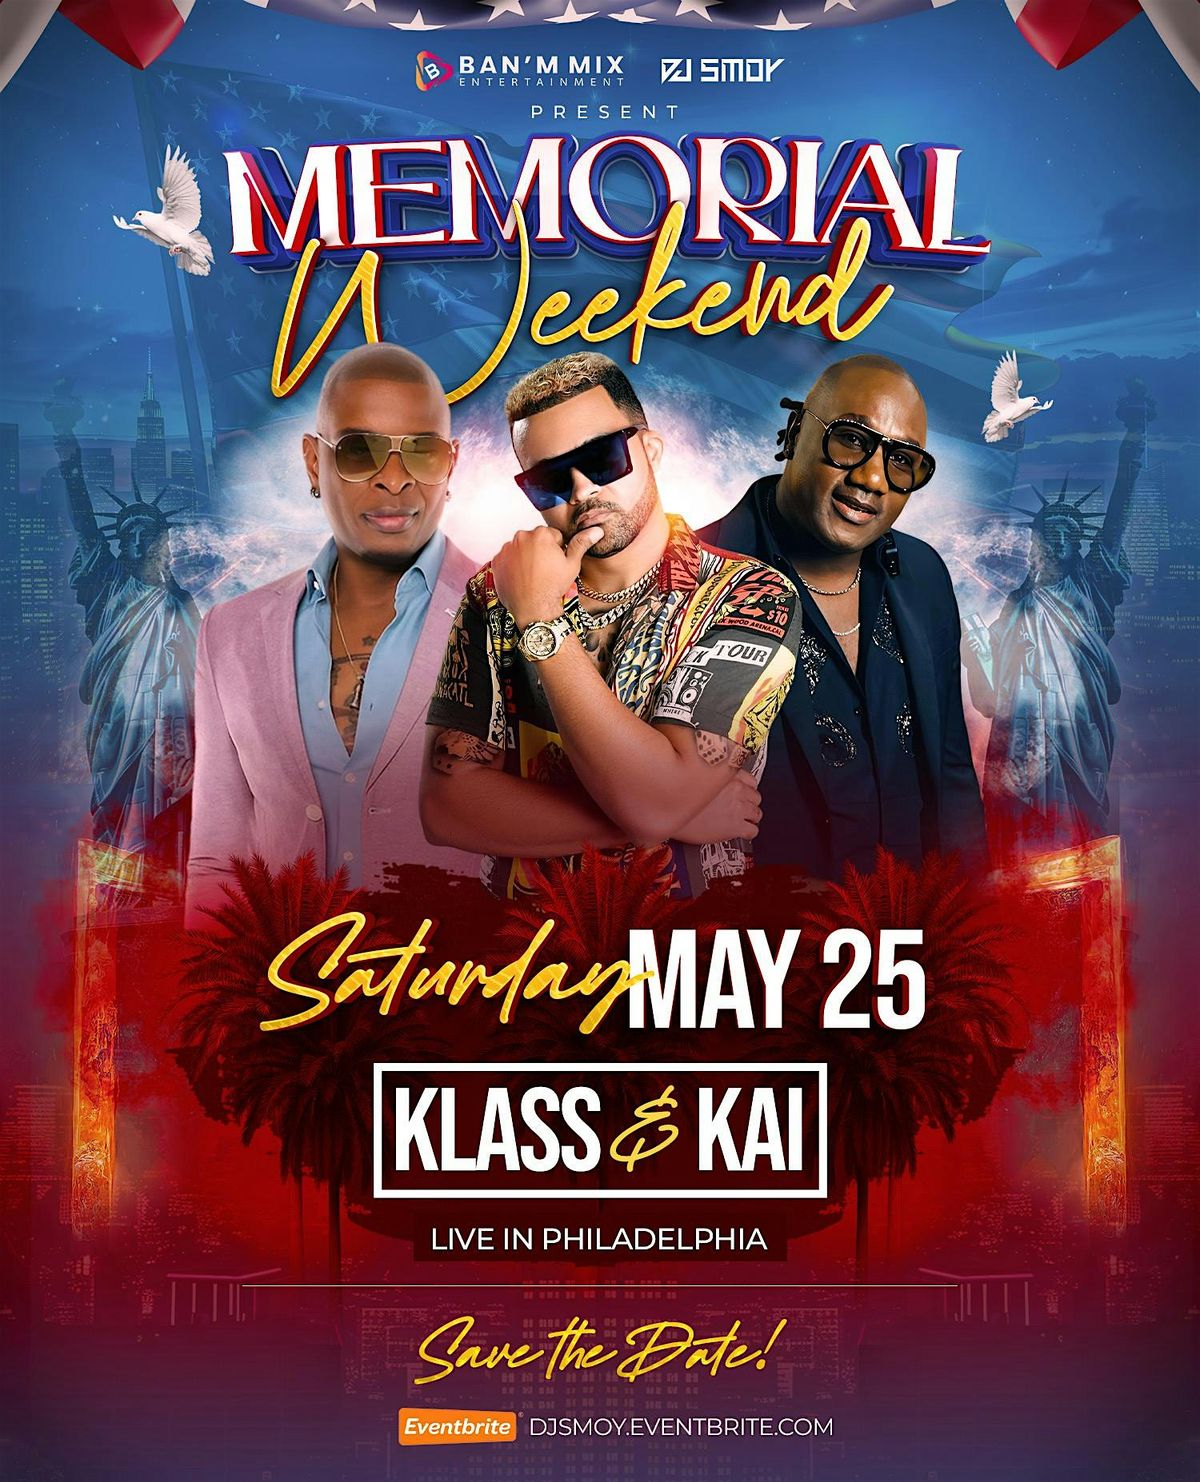 KLASS & KAI LIVE IN PHILADELPHIA ( Memorial Weekend)